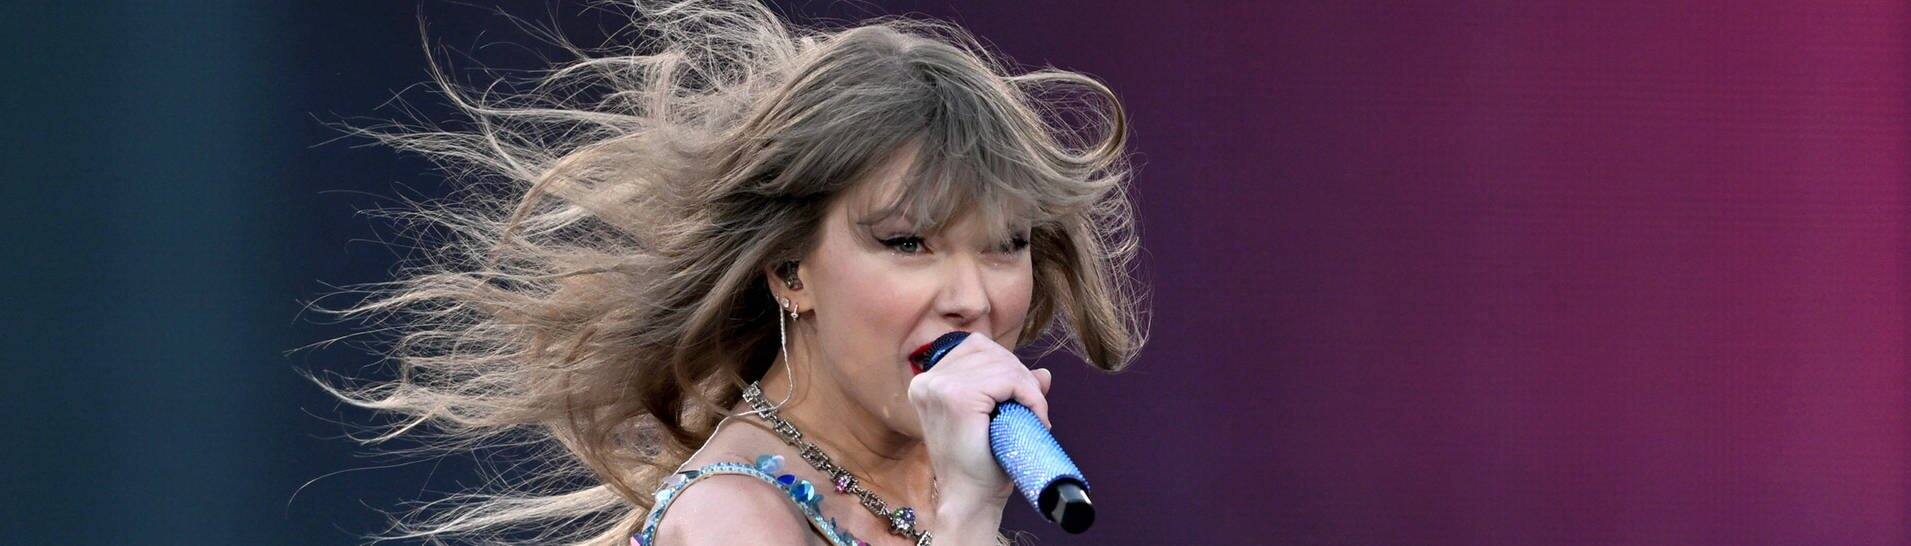 Für die Konzerte von Taylor Swift, die mit wehendem Haar in ein Mikrofon singt, wurden tickets geklaut.